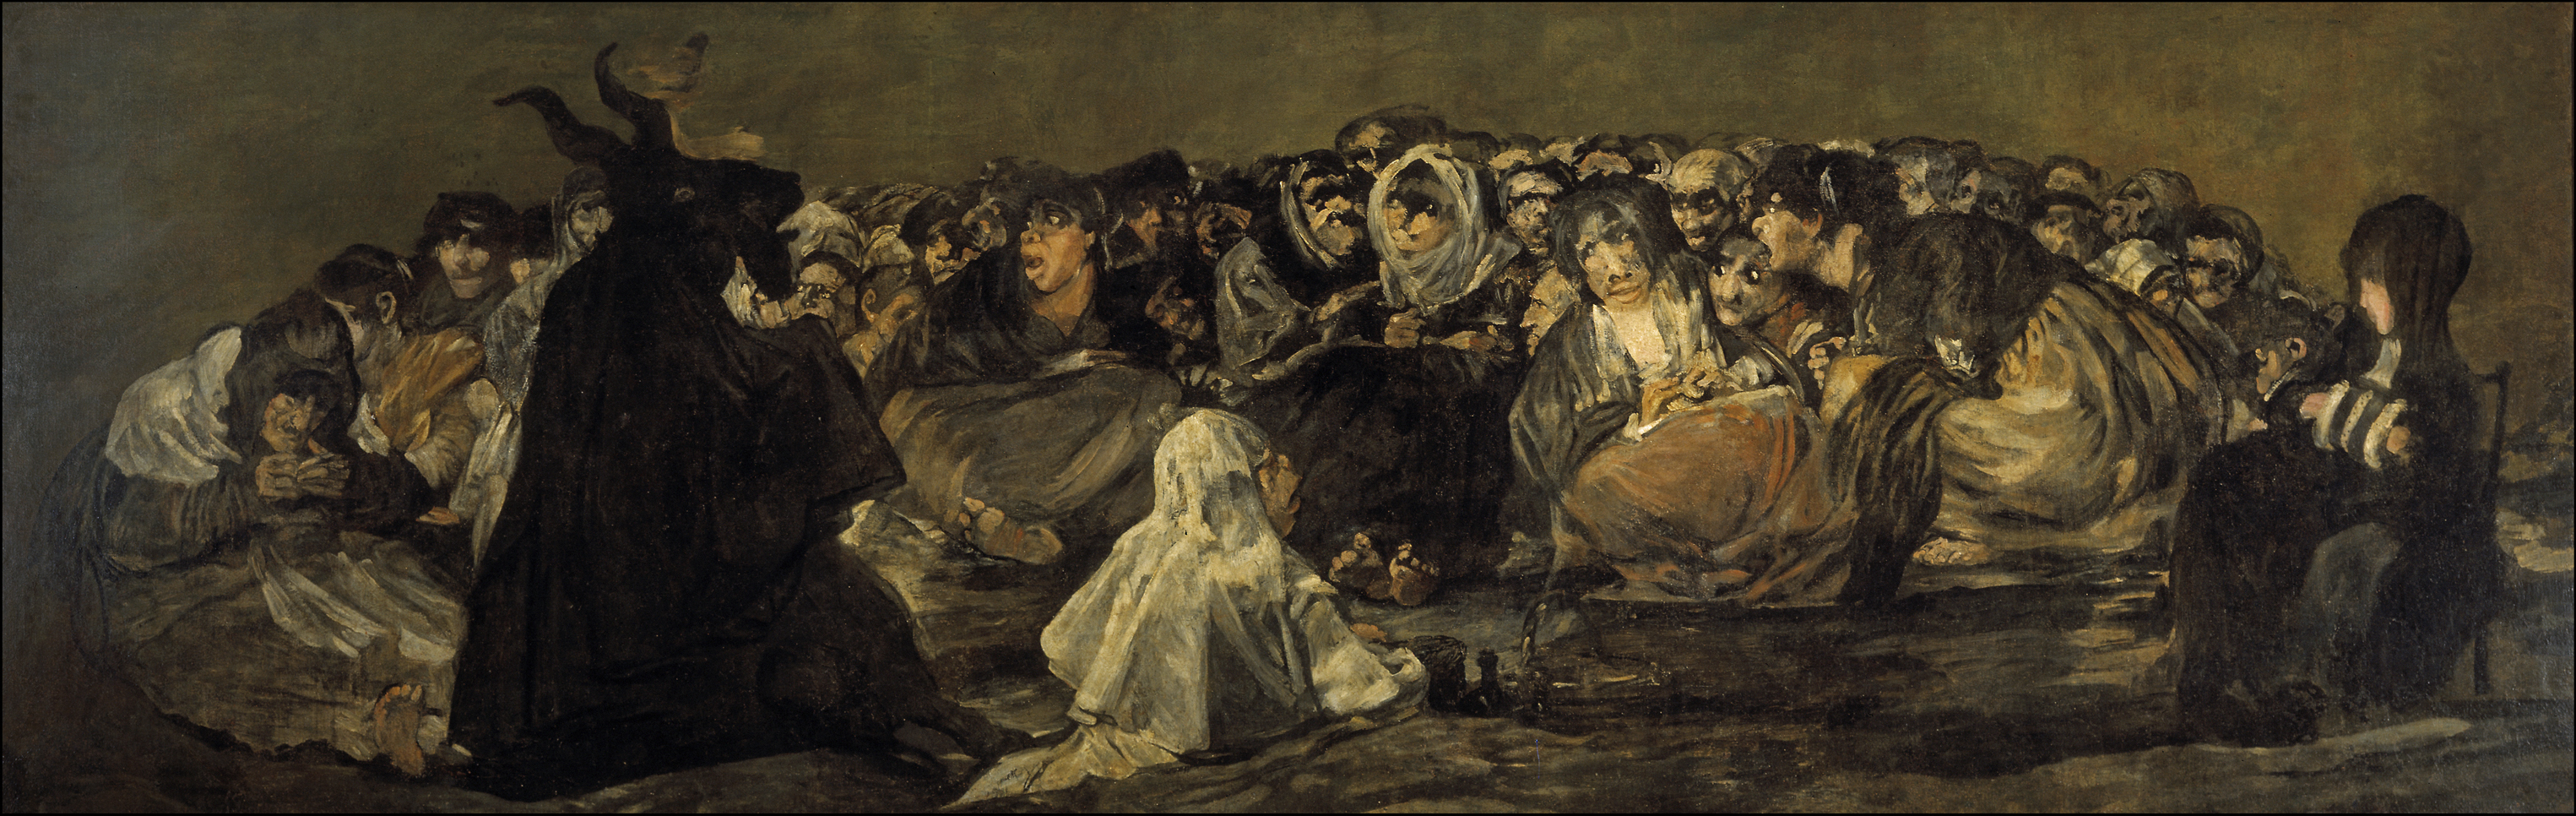 El aquelarre o el Gran Cabrón (1823) – Francisco de Goya.